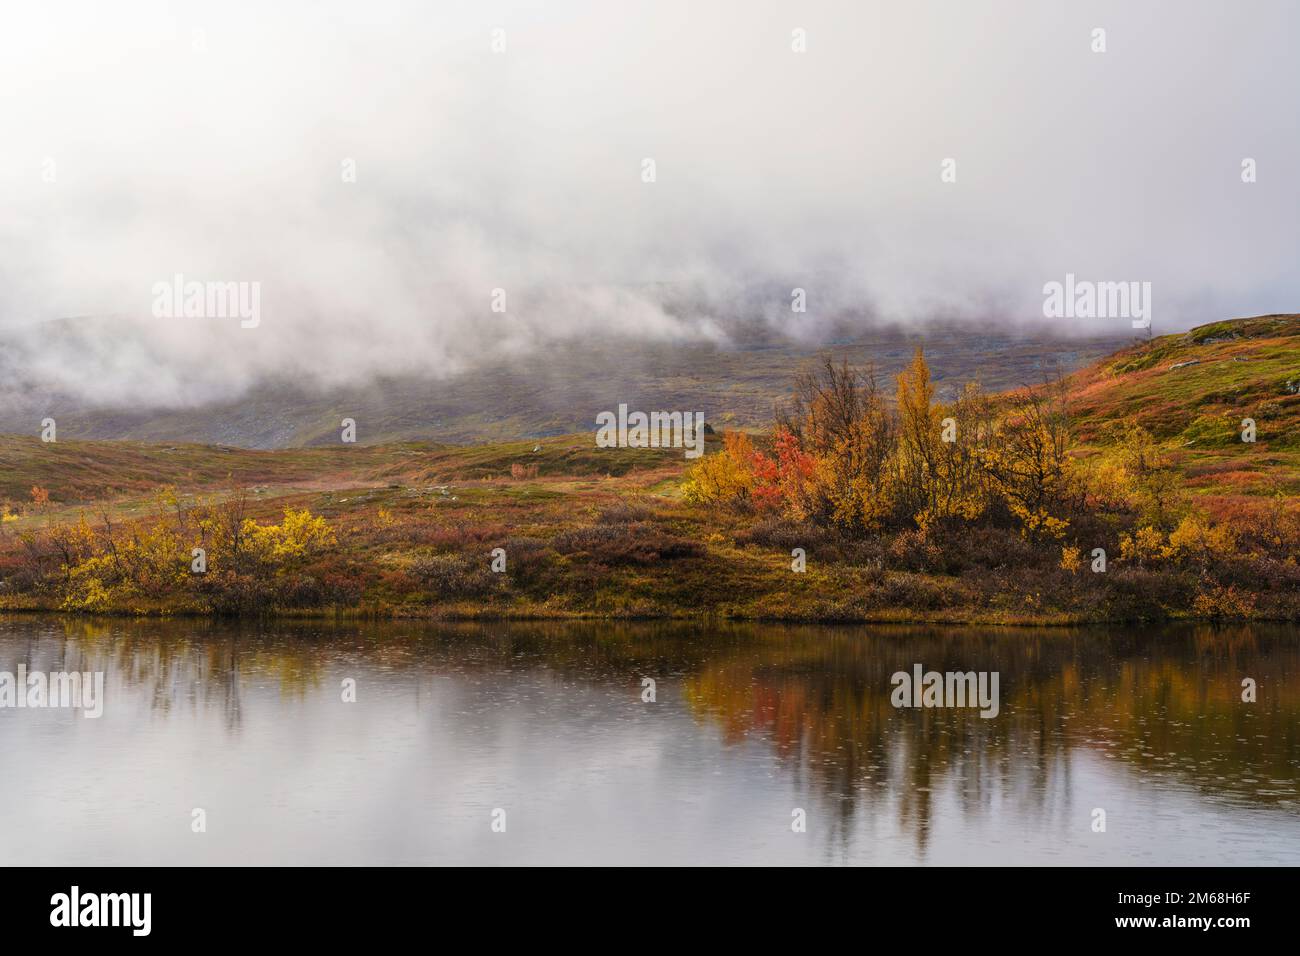 Herbstsaison in Björkliden, kleiner See mit Bäumen und Bergen, die sich im Wasser spiegeln, Björkliden, schwedisches Lappland, Schweden Stockfoto